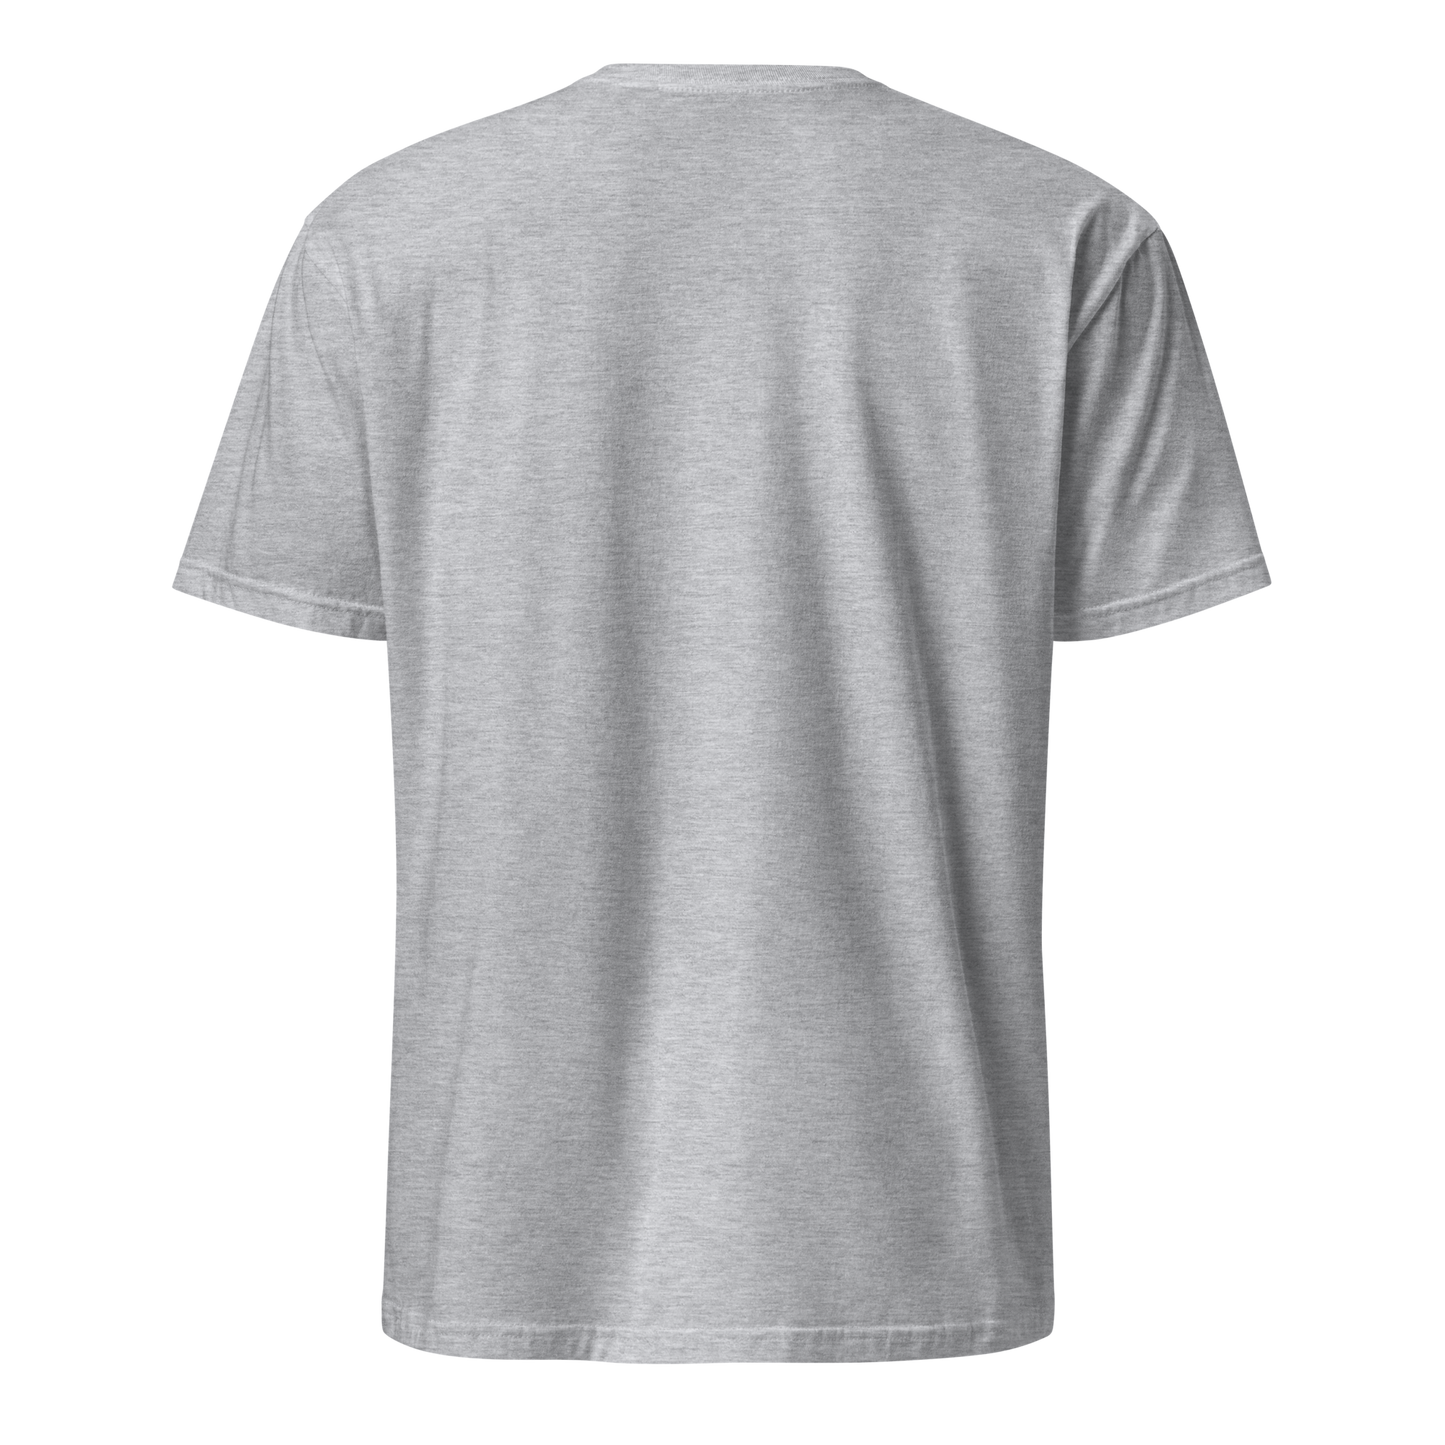 Llevate De Mi Unisex Dominican T-Shirt